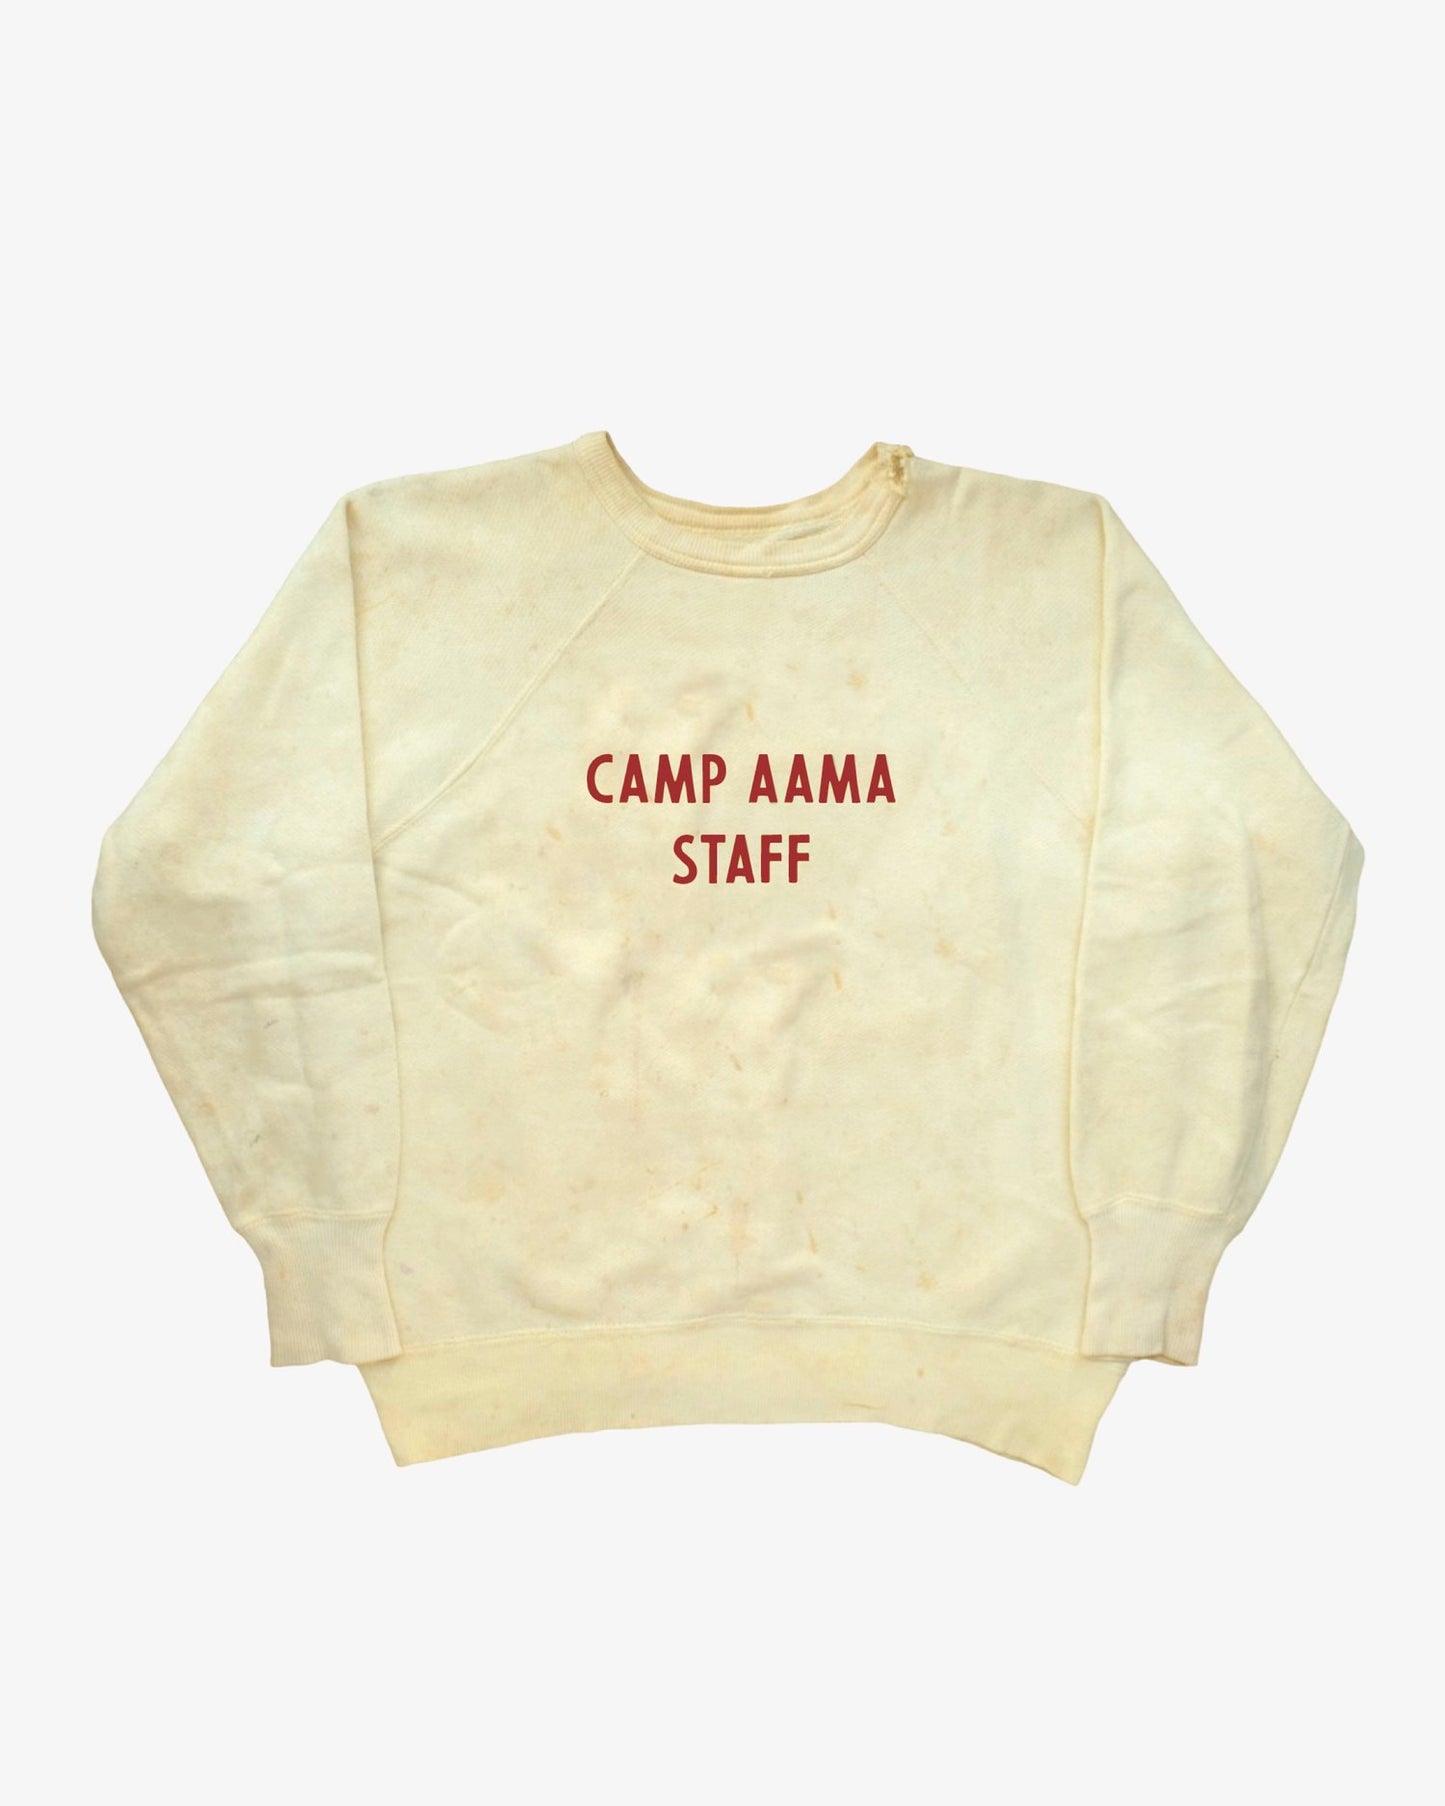 'Camp Aama" Staff Crewneck